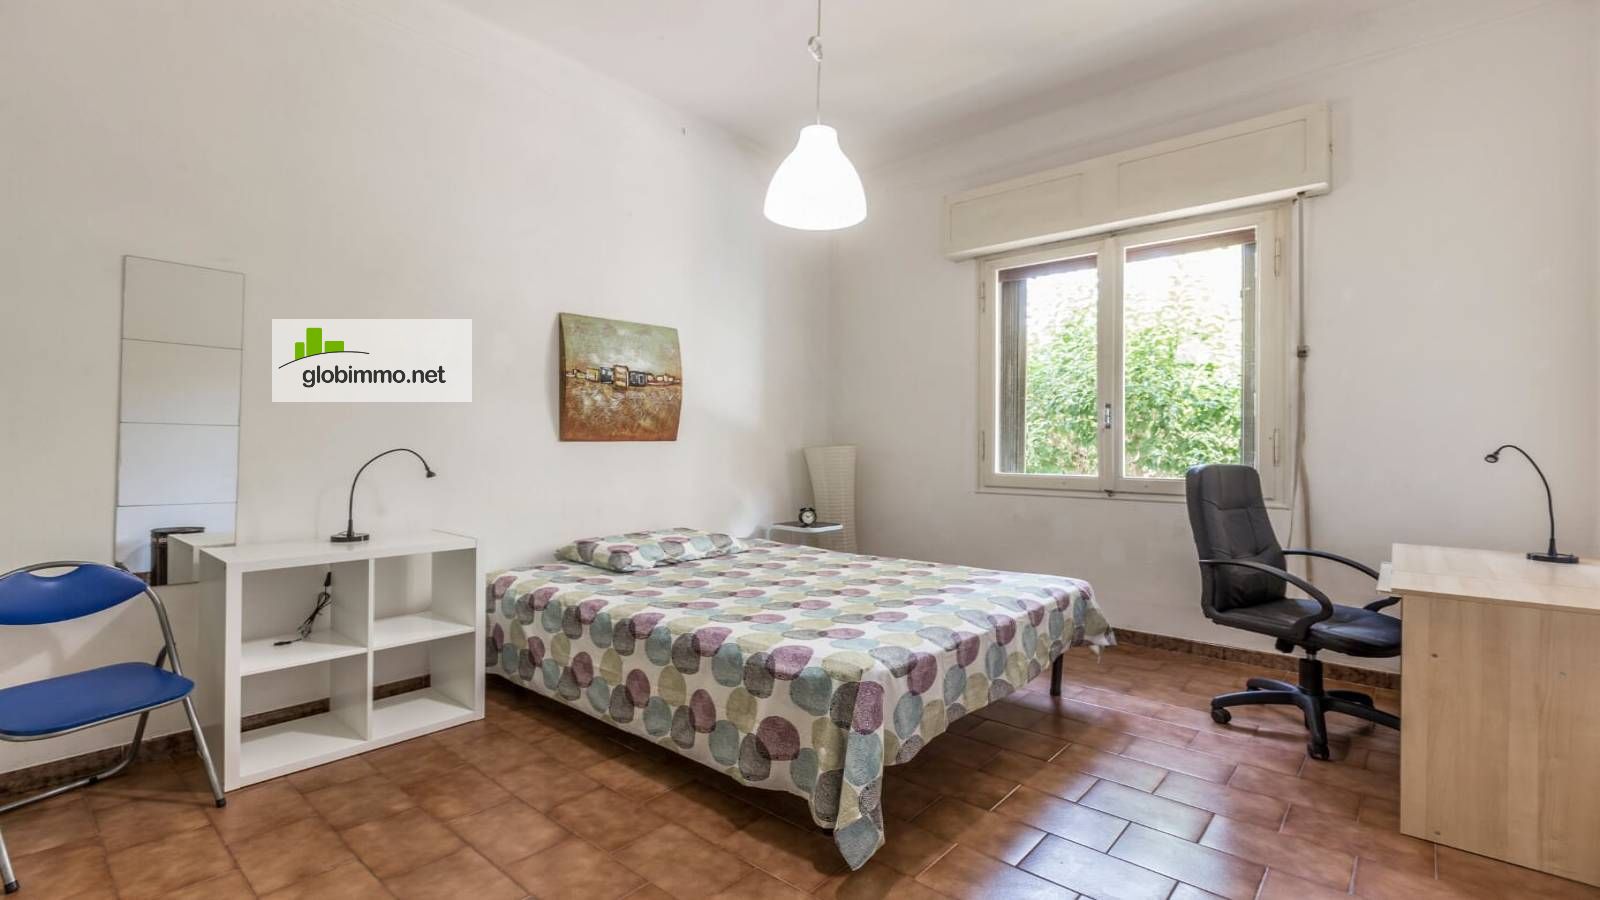 Private room Bologna, Via Bambaglioli Graziolo, Room in 3-bedroom apartment in Colli, Bologna - #1